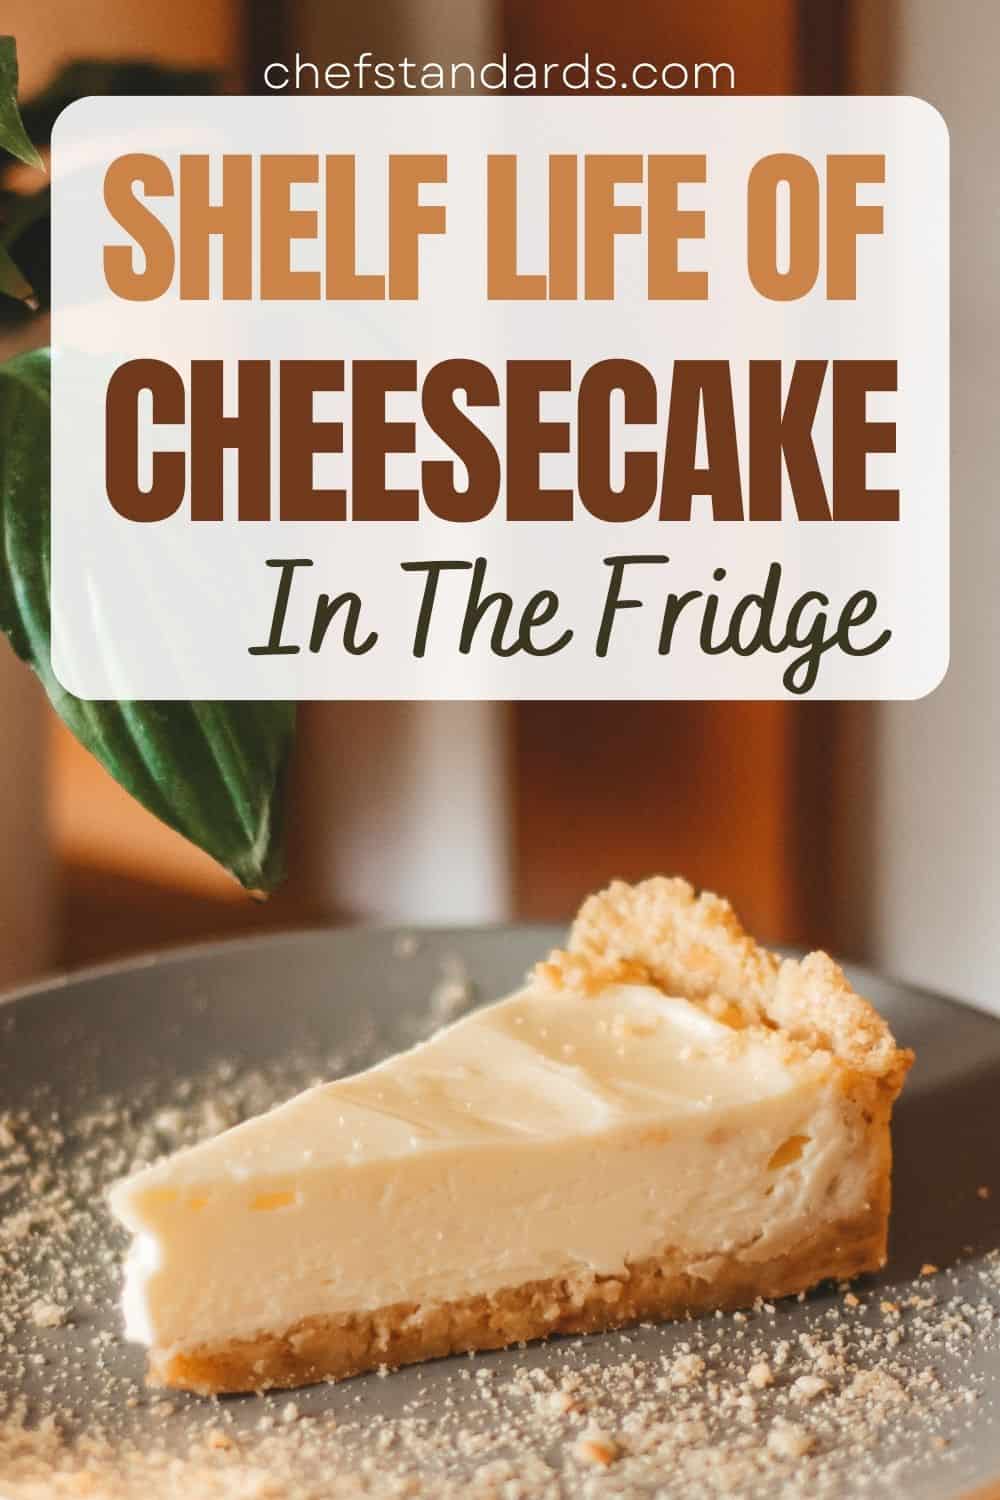 Combien de temps un gâteau au fromage se conserve-t-il dans le réfrigérateur ? 